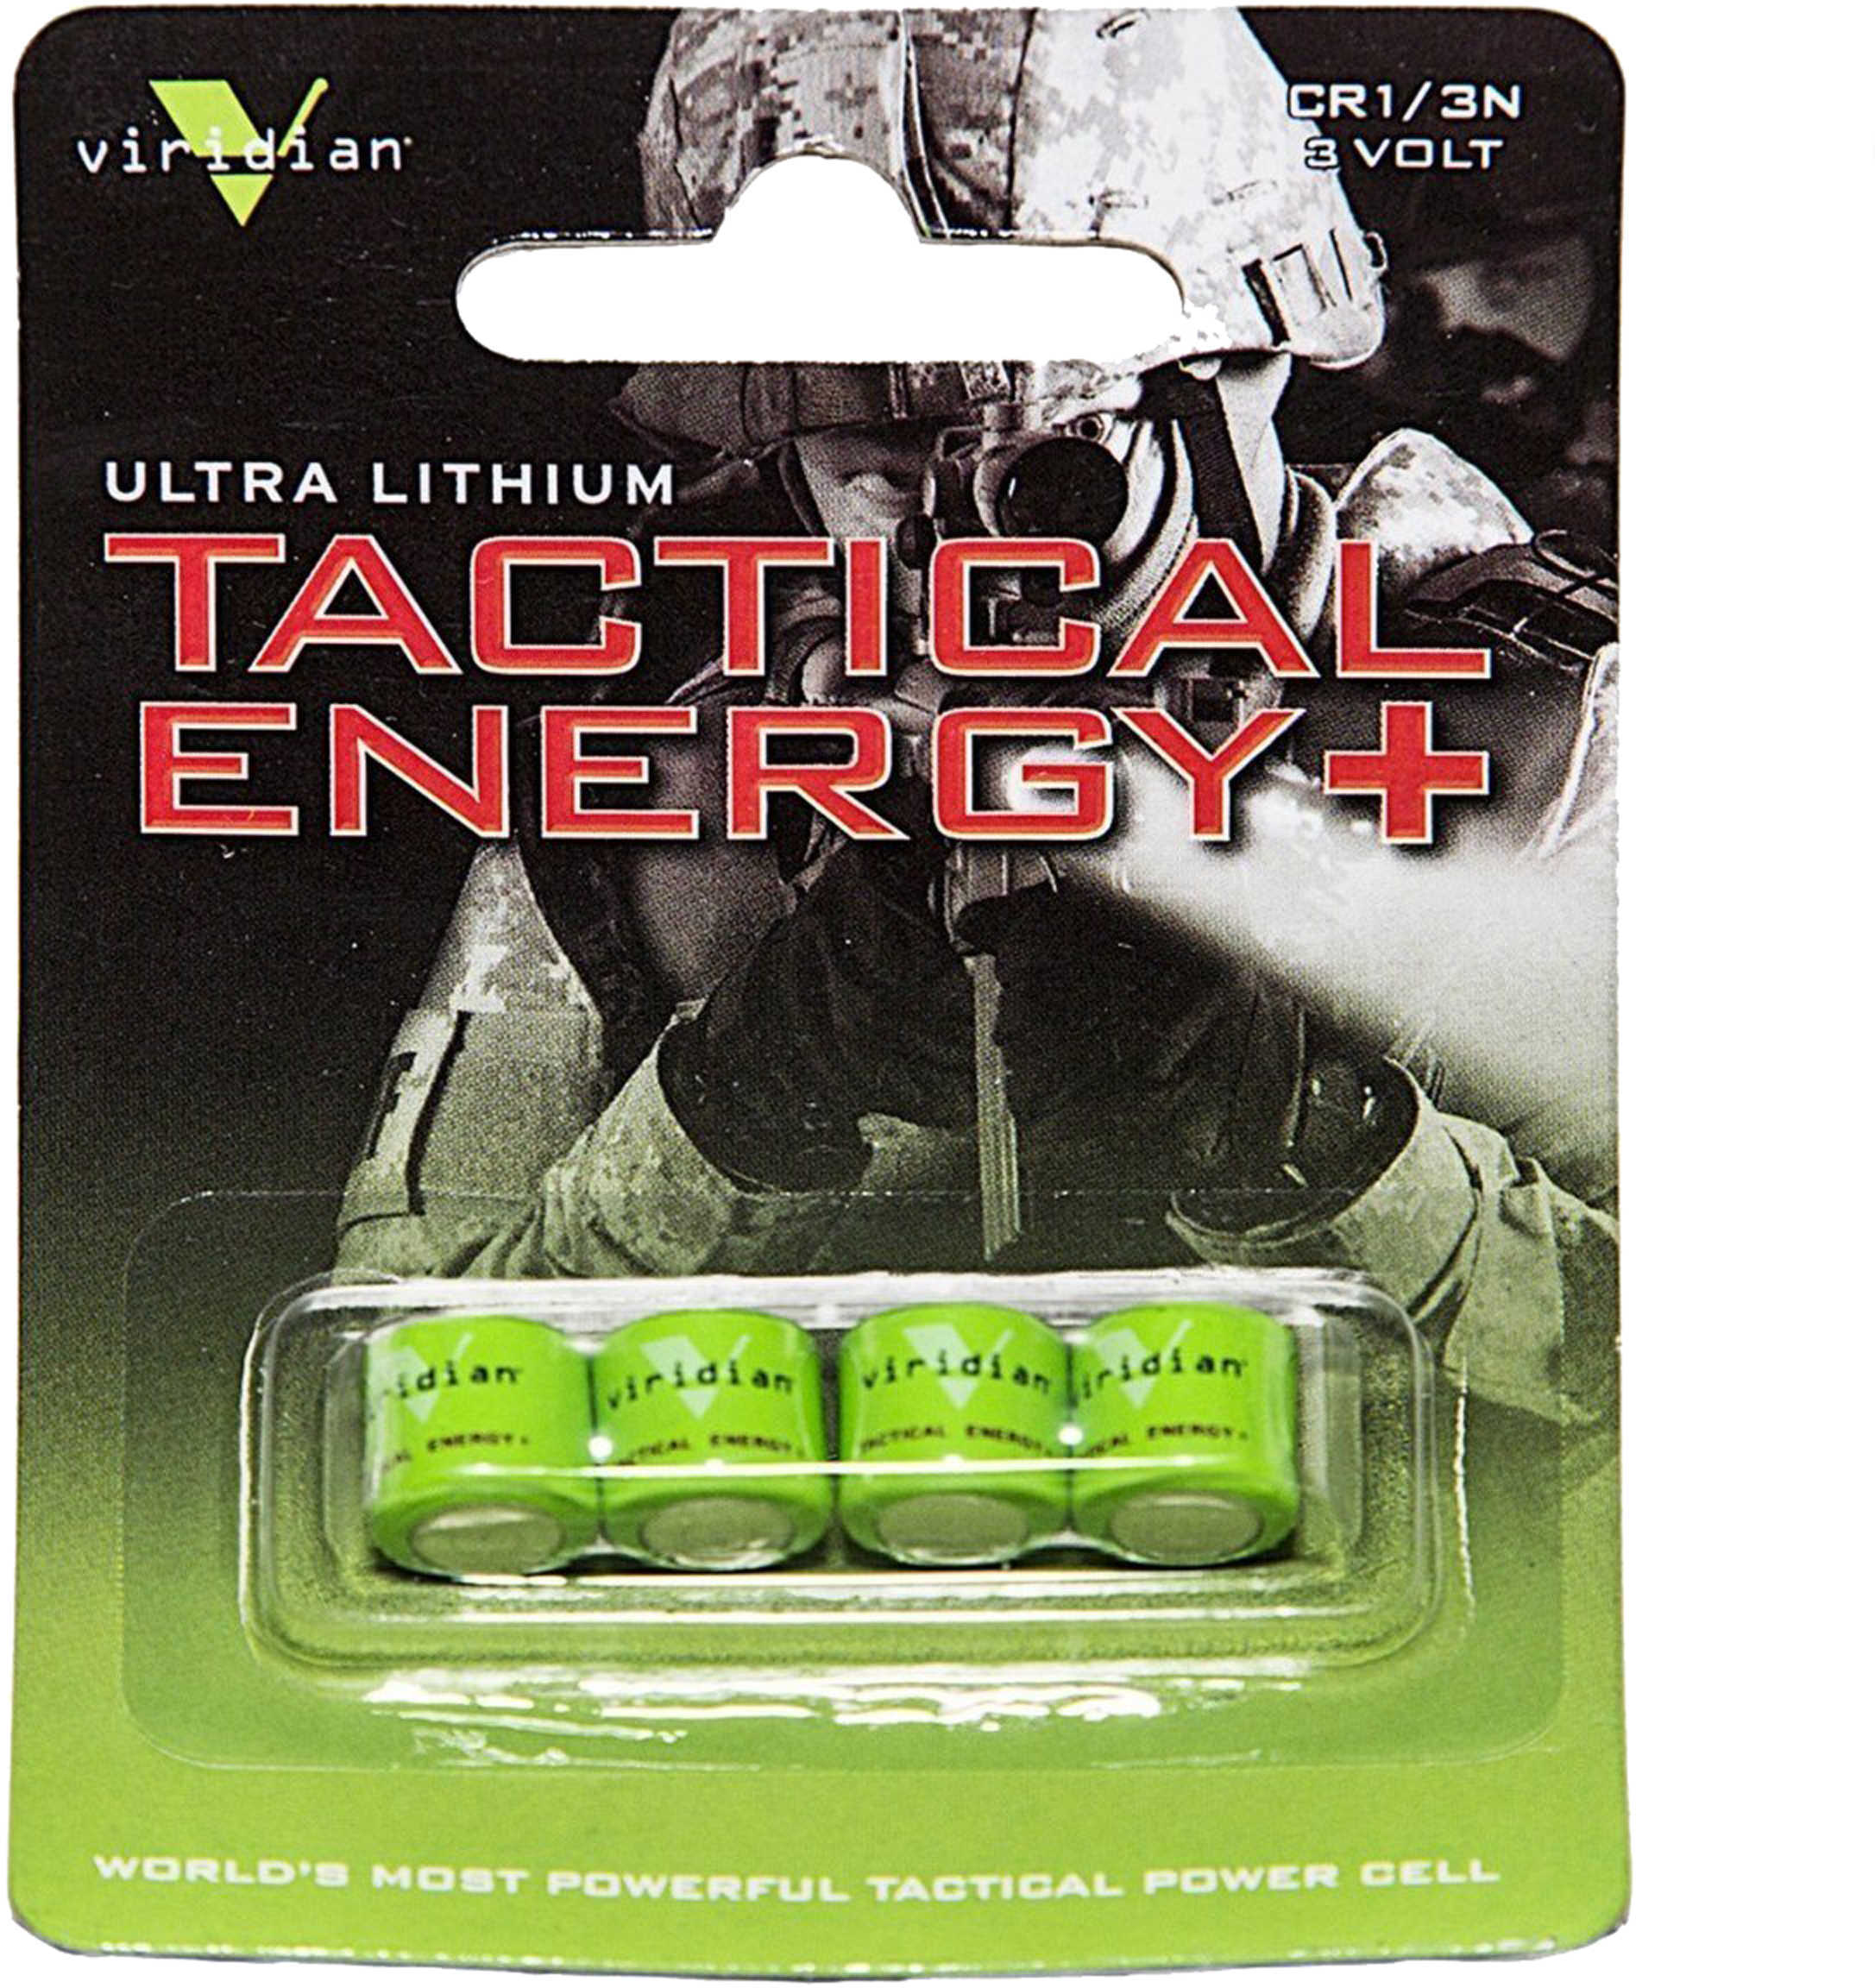 Viridian Lithium Battery 1/3N 4-Pack Fits REACTOR